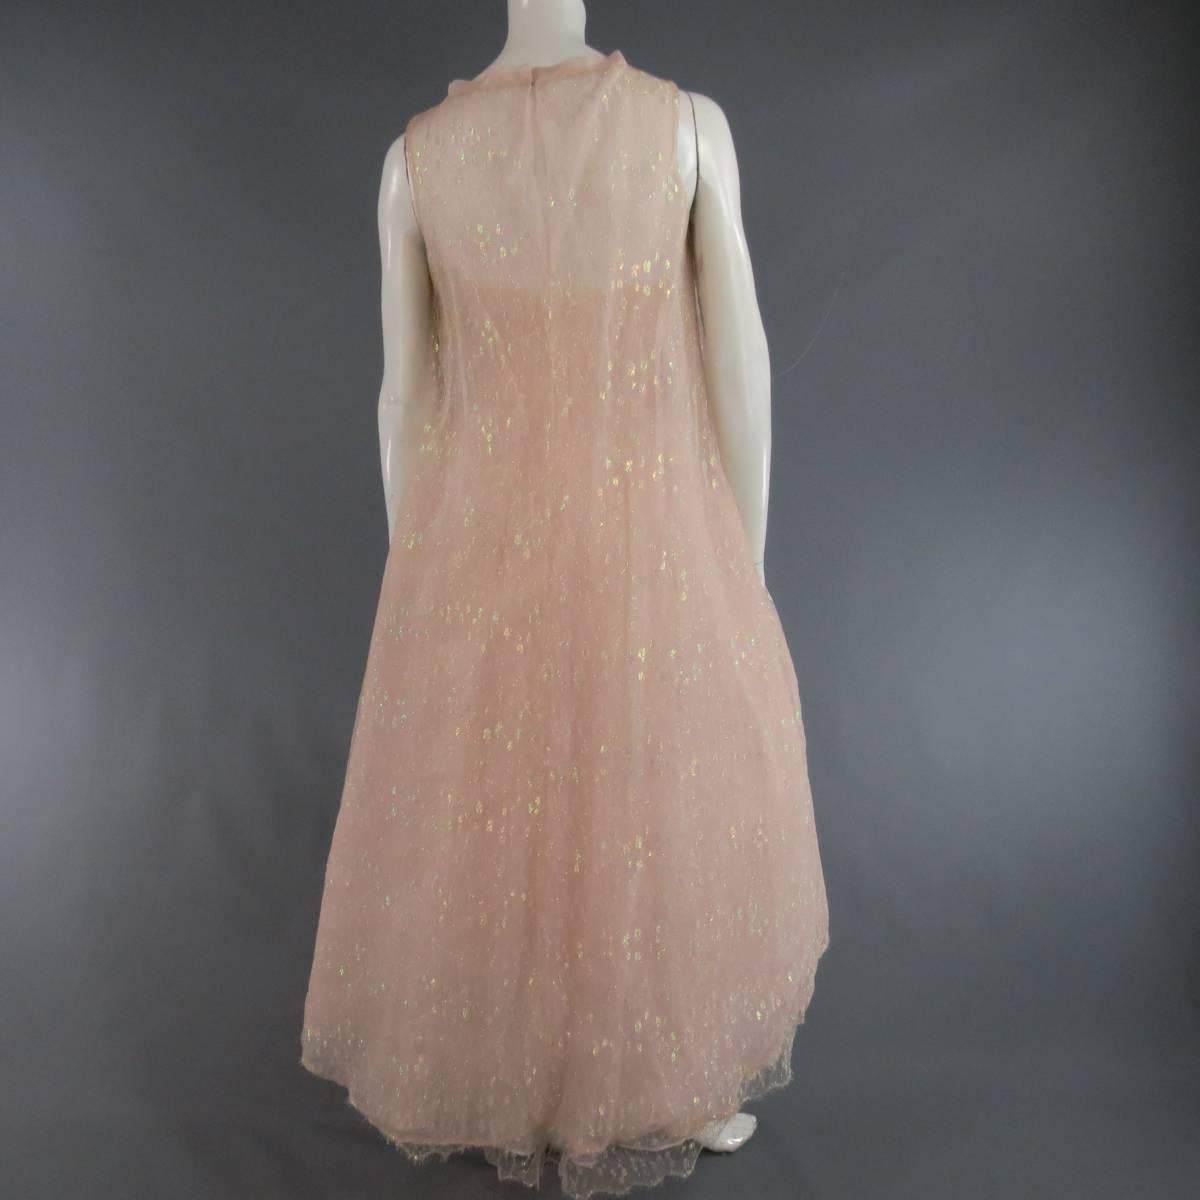 MONIQUE LHUILLIER Size 4 Pink Iridescent Lace Strapless Two Piece Cape Dress 2